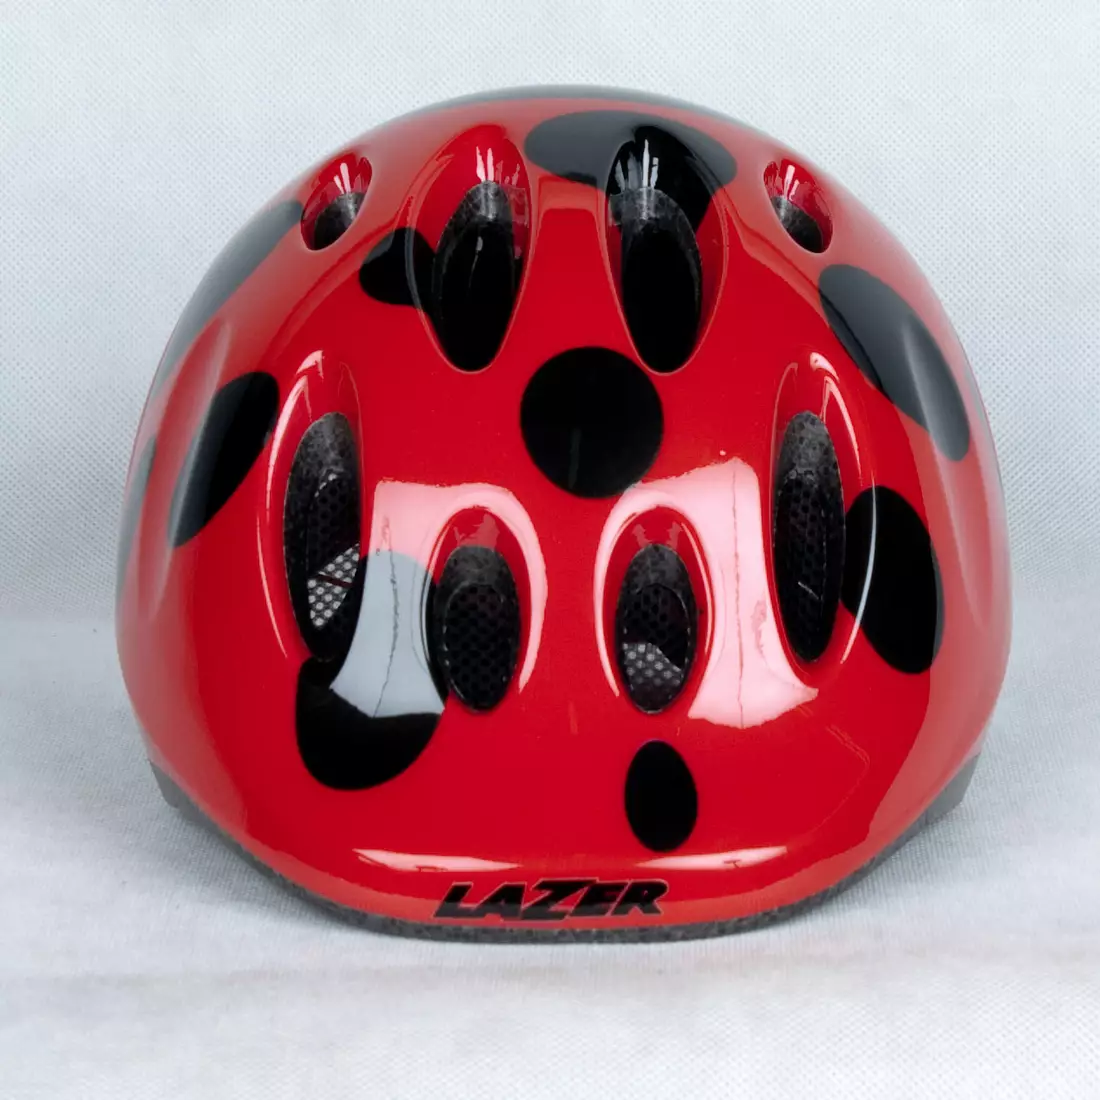 LAZER - MAX PLUS children's helmet - ladybug